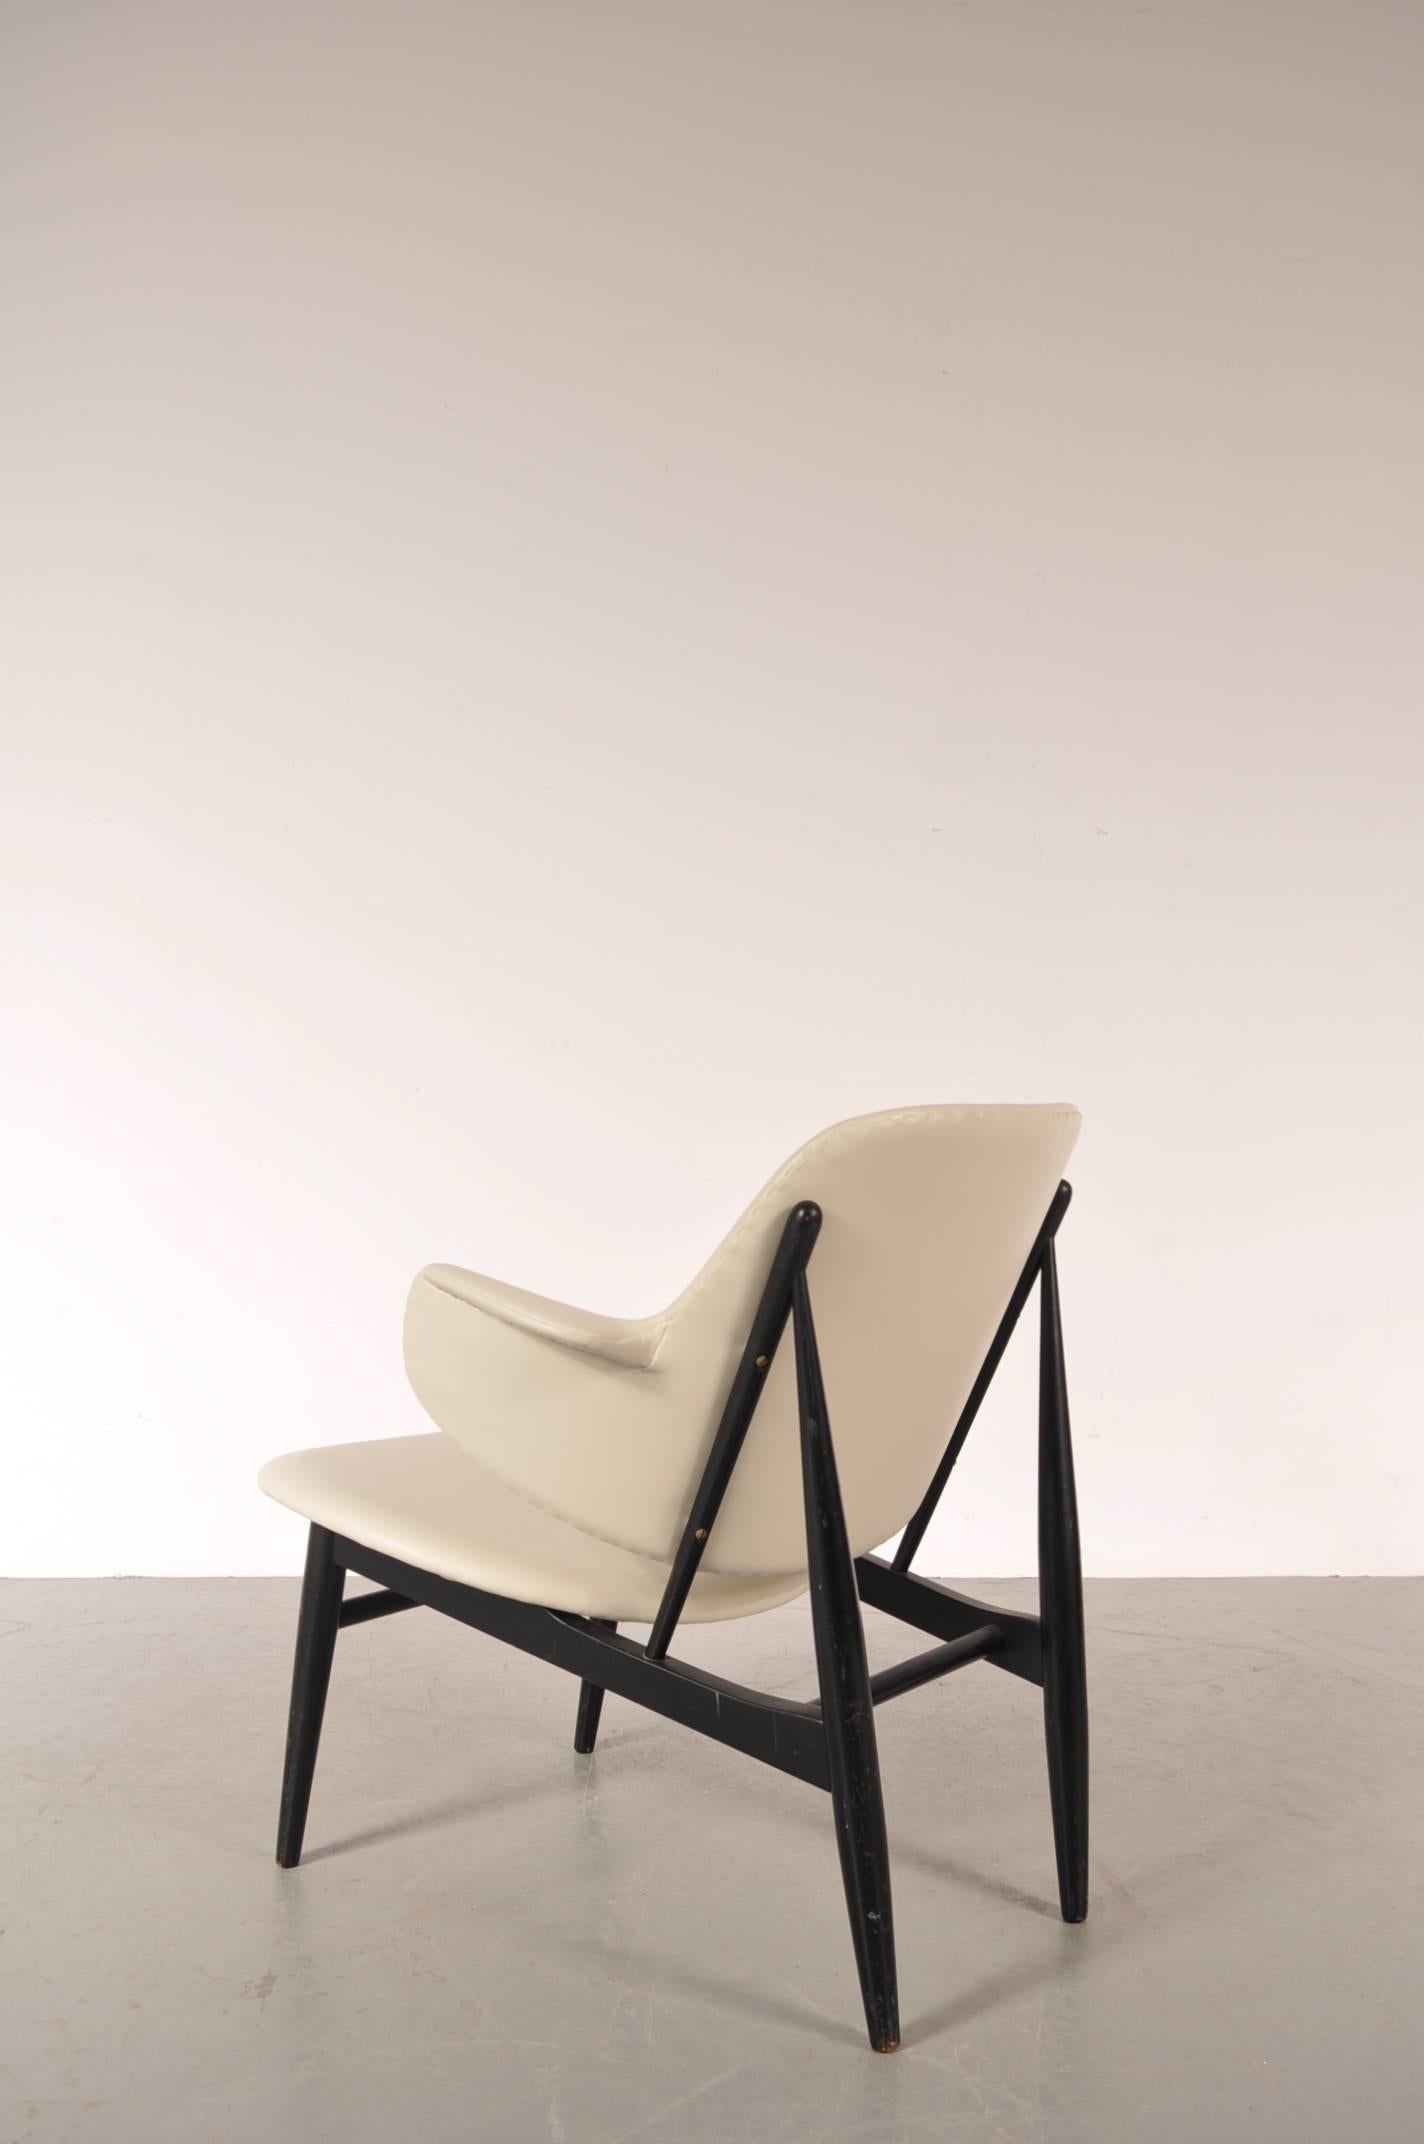 Leather Shell Chair by Ib Kofod-Larsen for Christensen & Larsen, Denmark, circa 1950